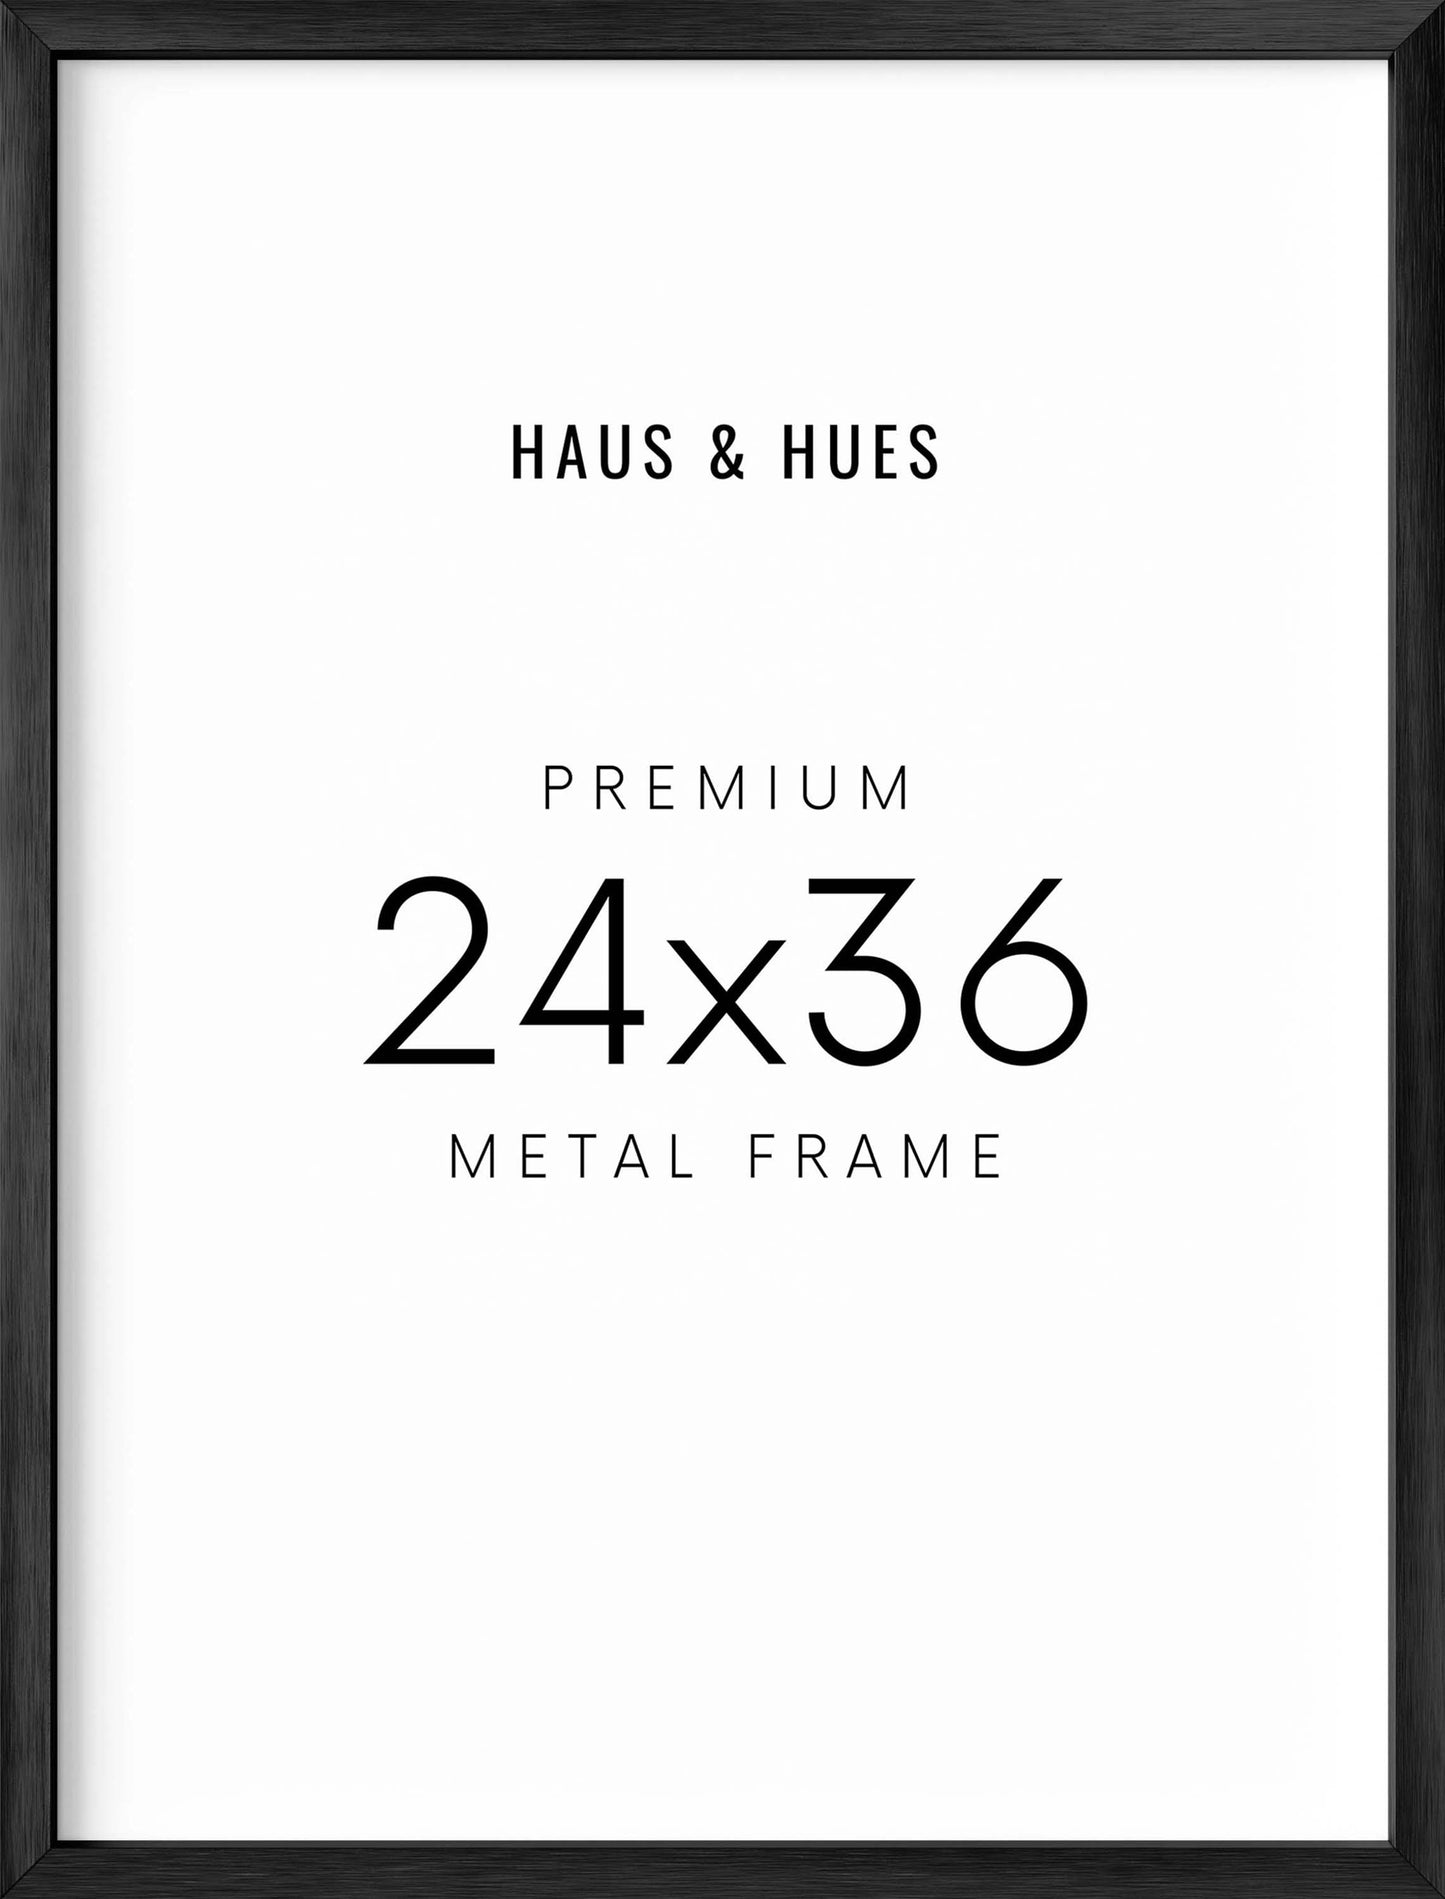 24x36 in, Set of 3, Black Aluminum